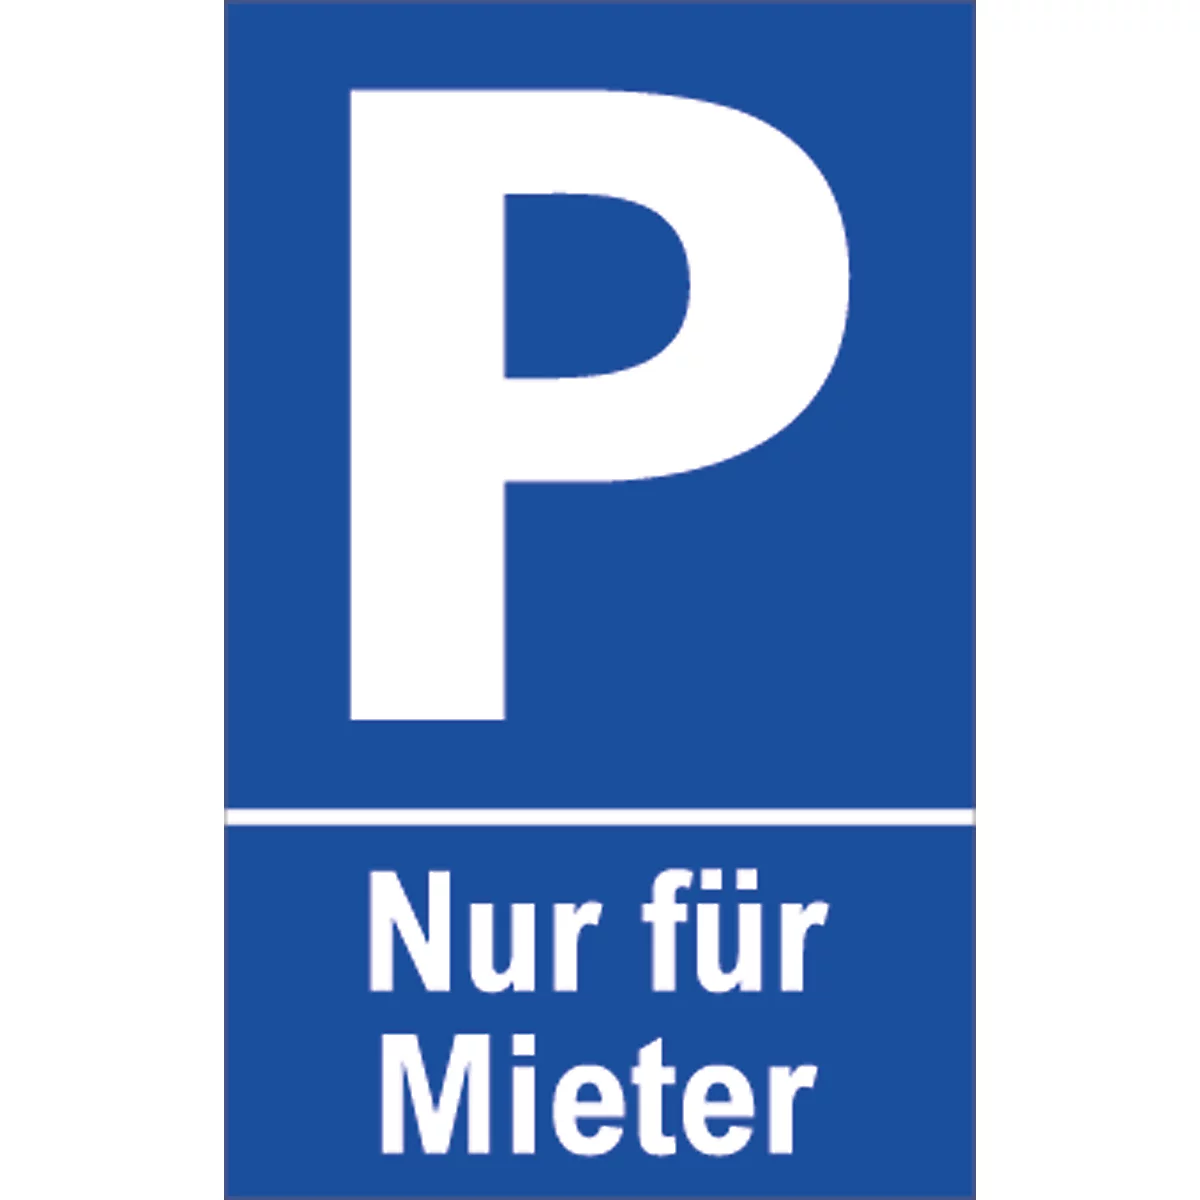 Señal de aparcamiento, "Nur für Mieter"